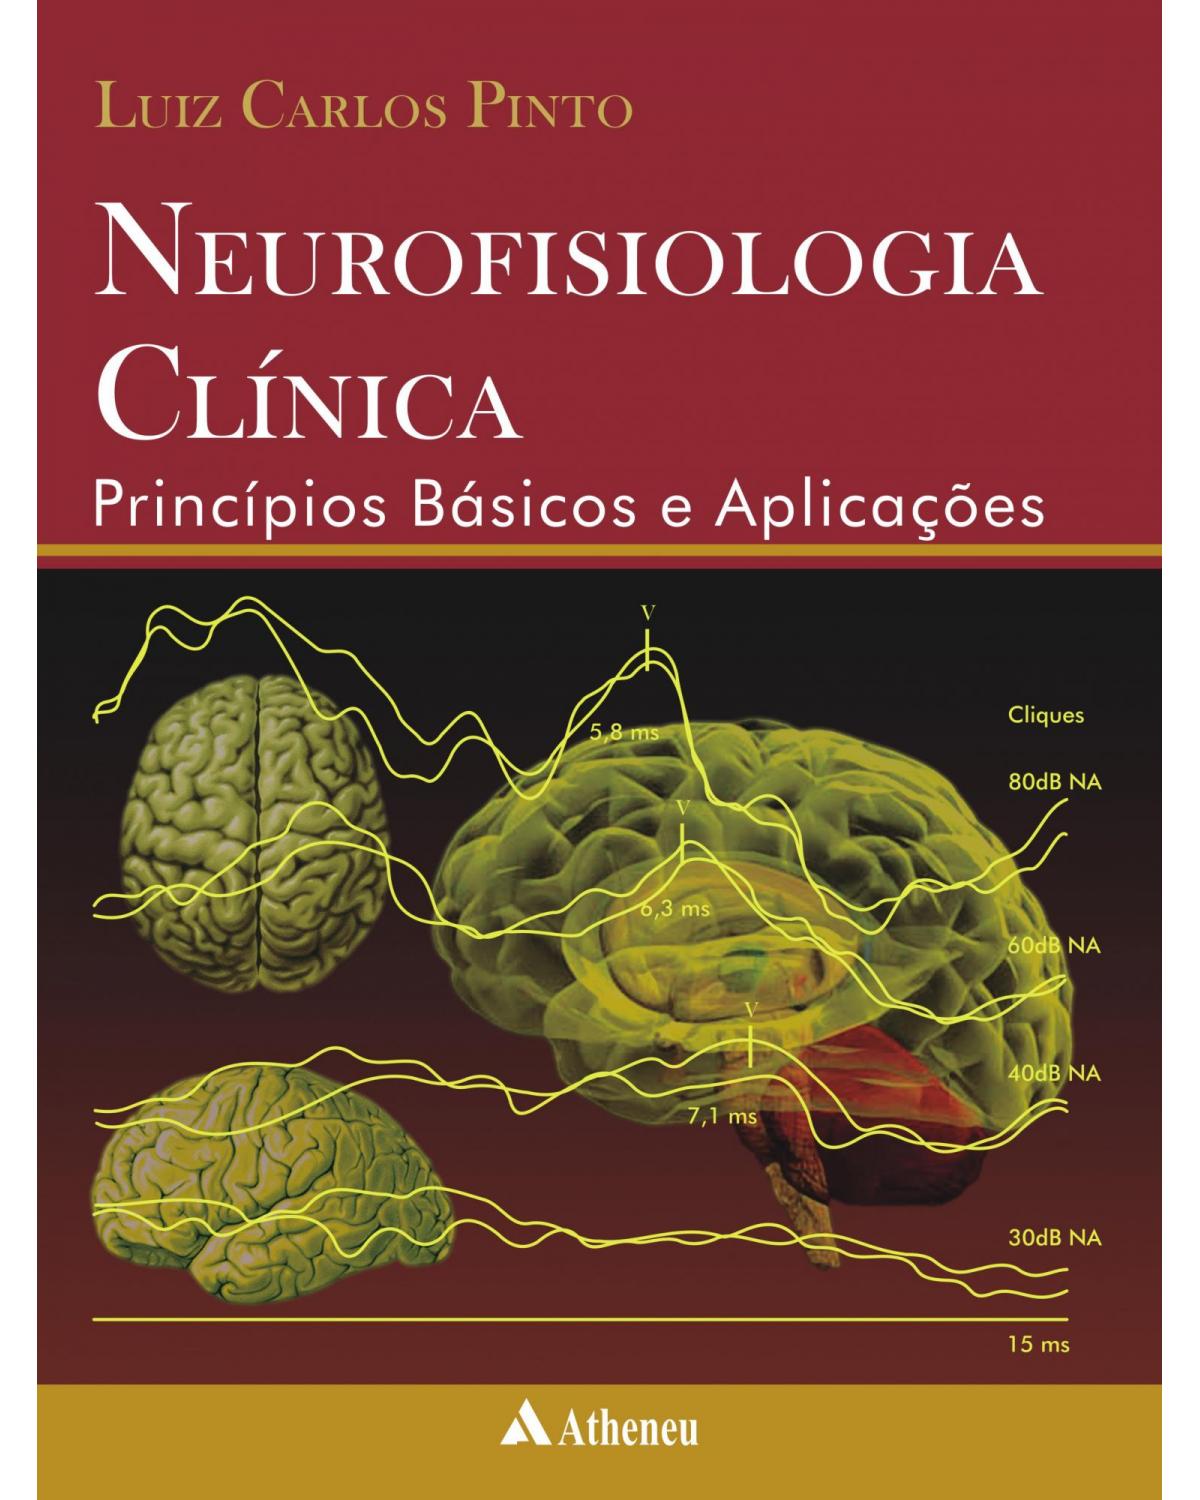 Neurofisiologia clínica - princípios básicos e aplicações - 2ª Edição | 2010